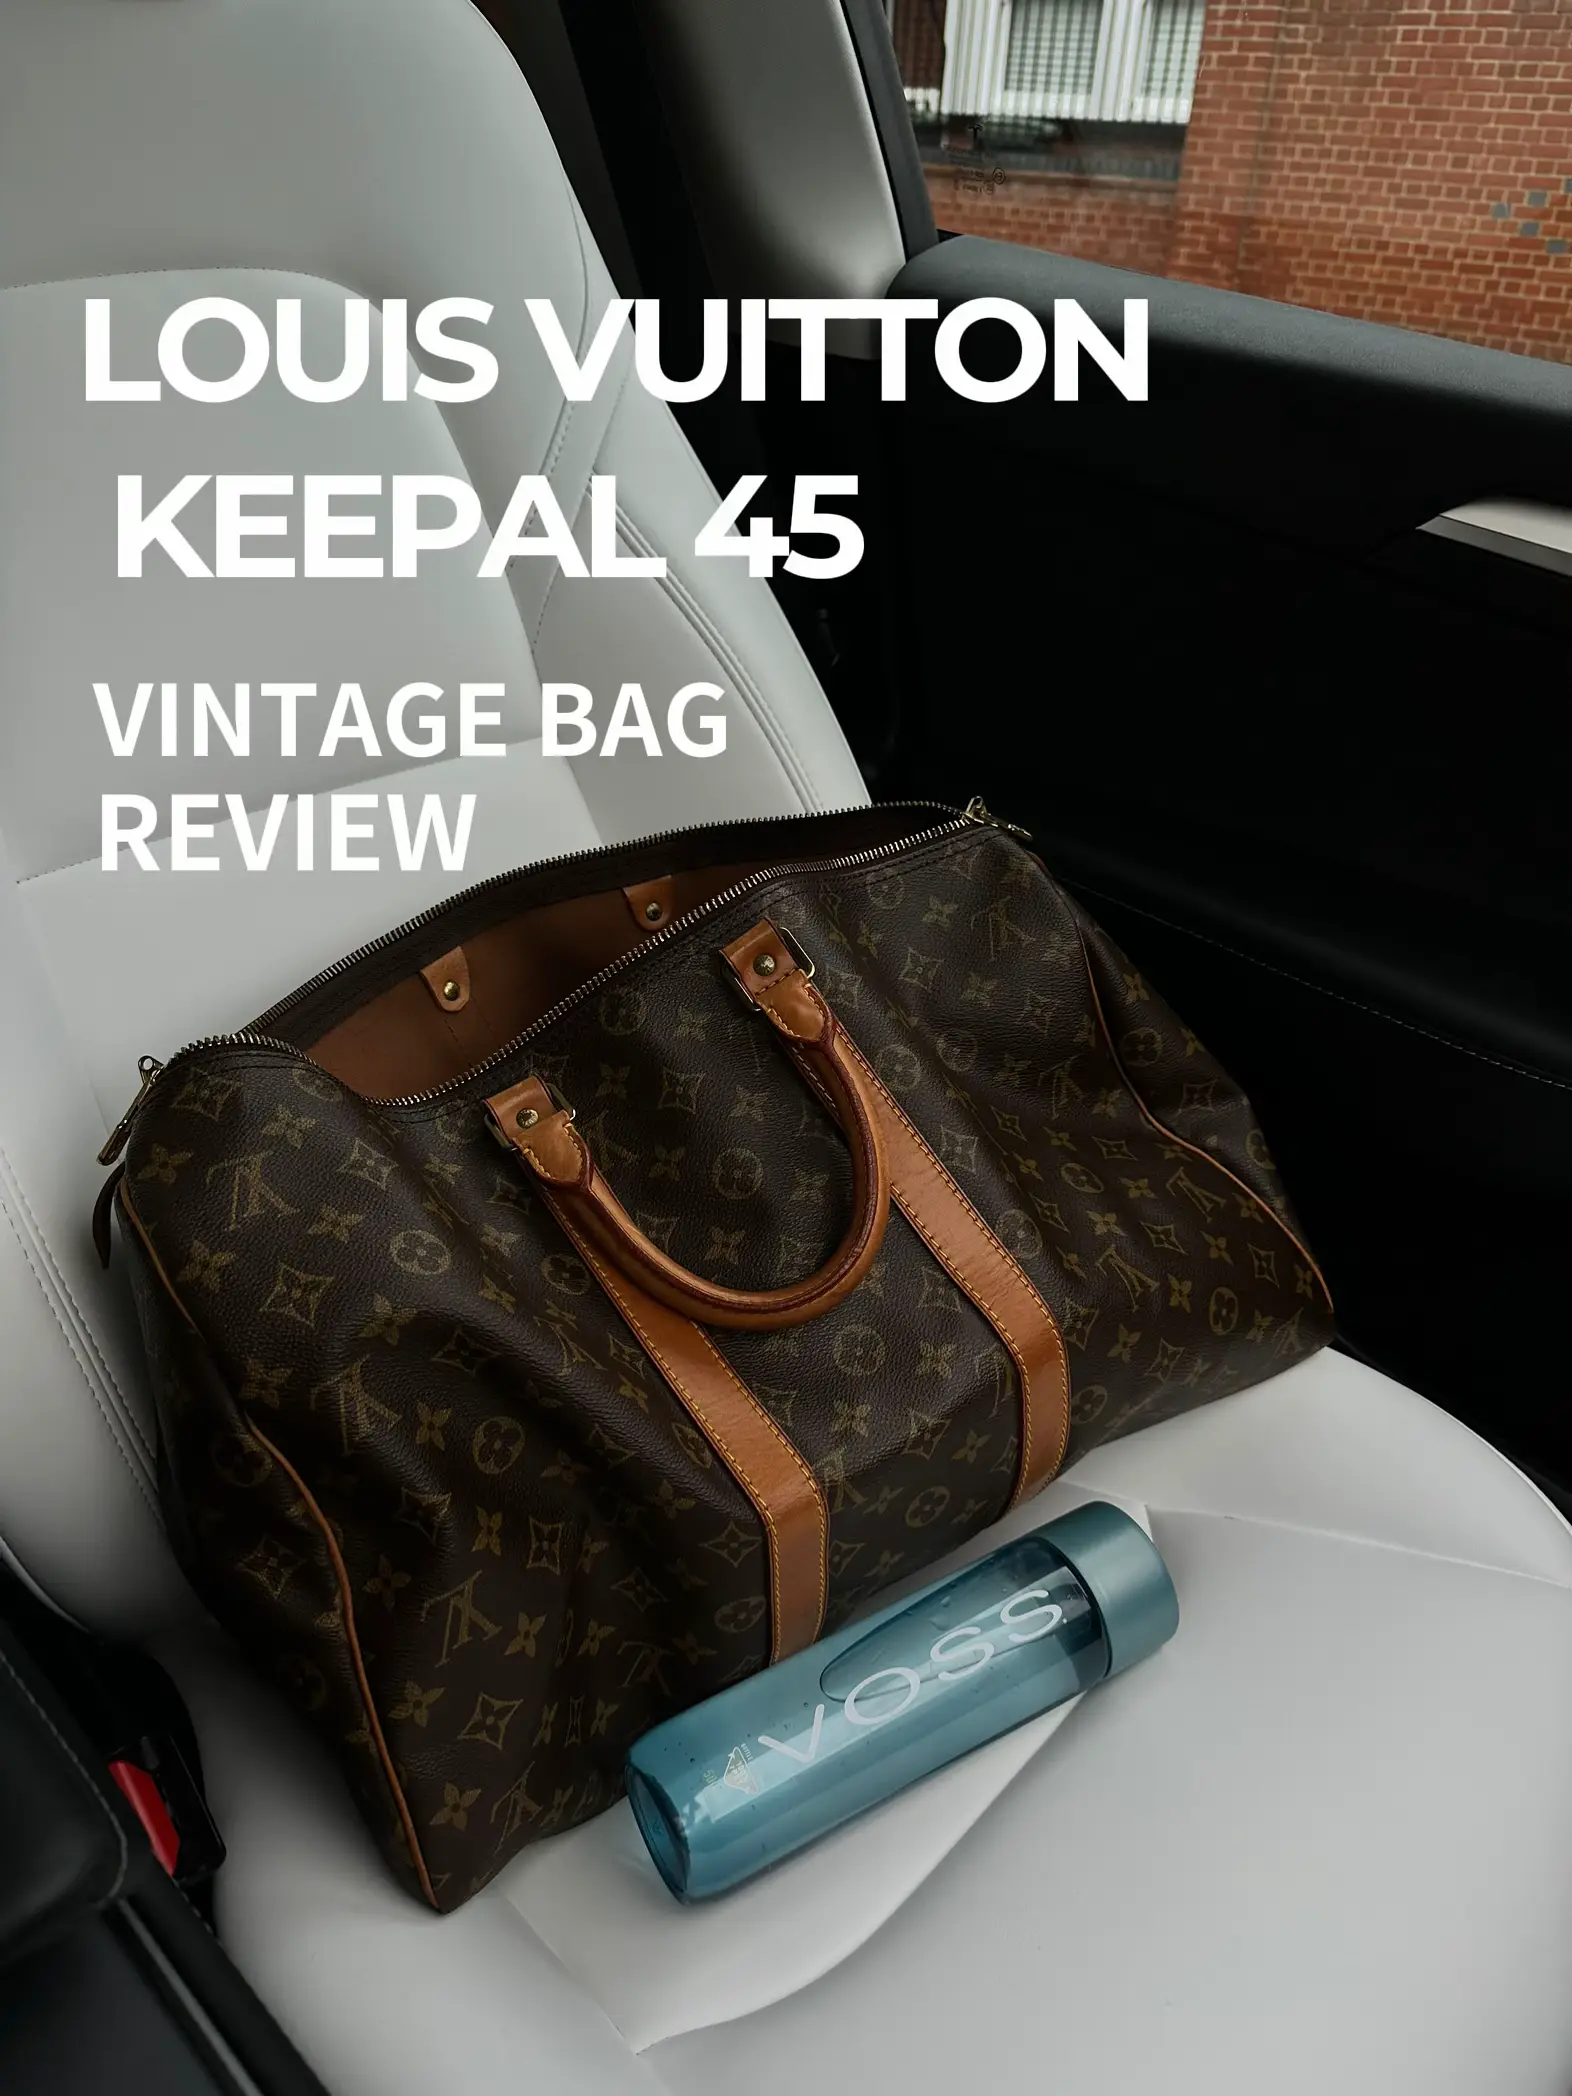 Louis Vuitton KEEPALL 55 HONEST Review